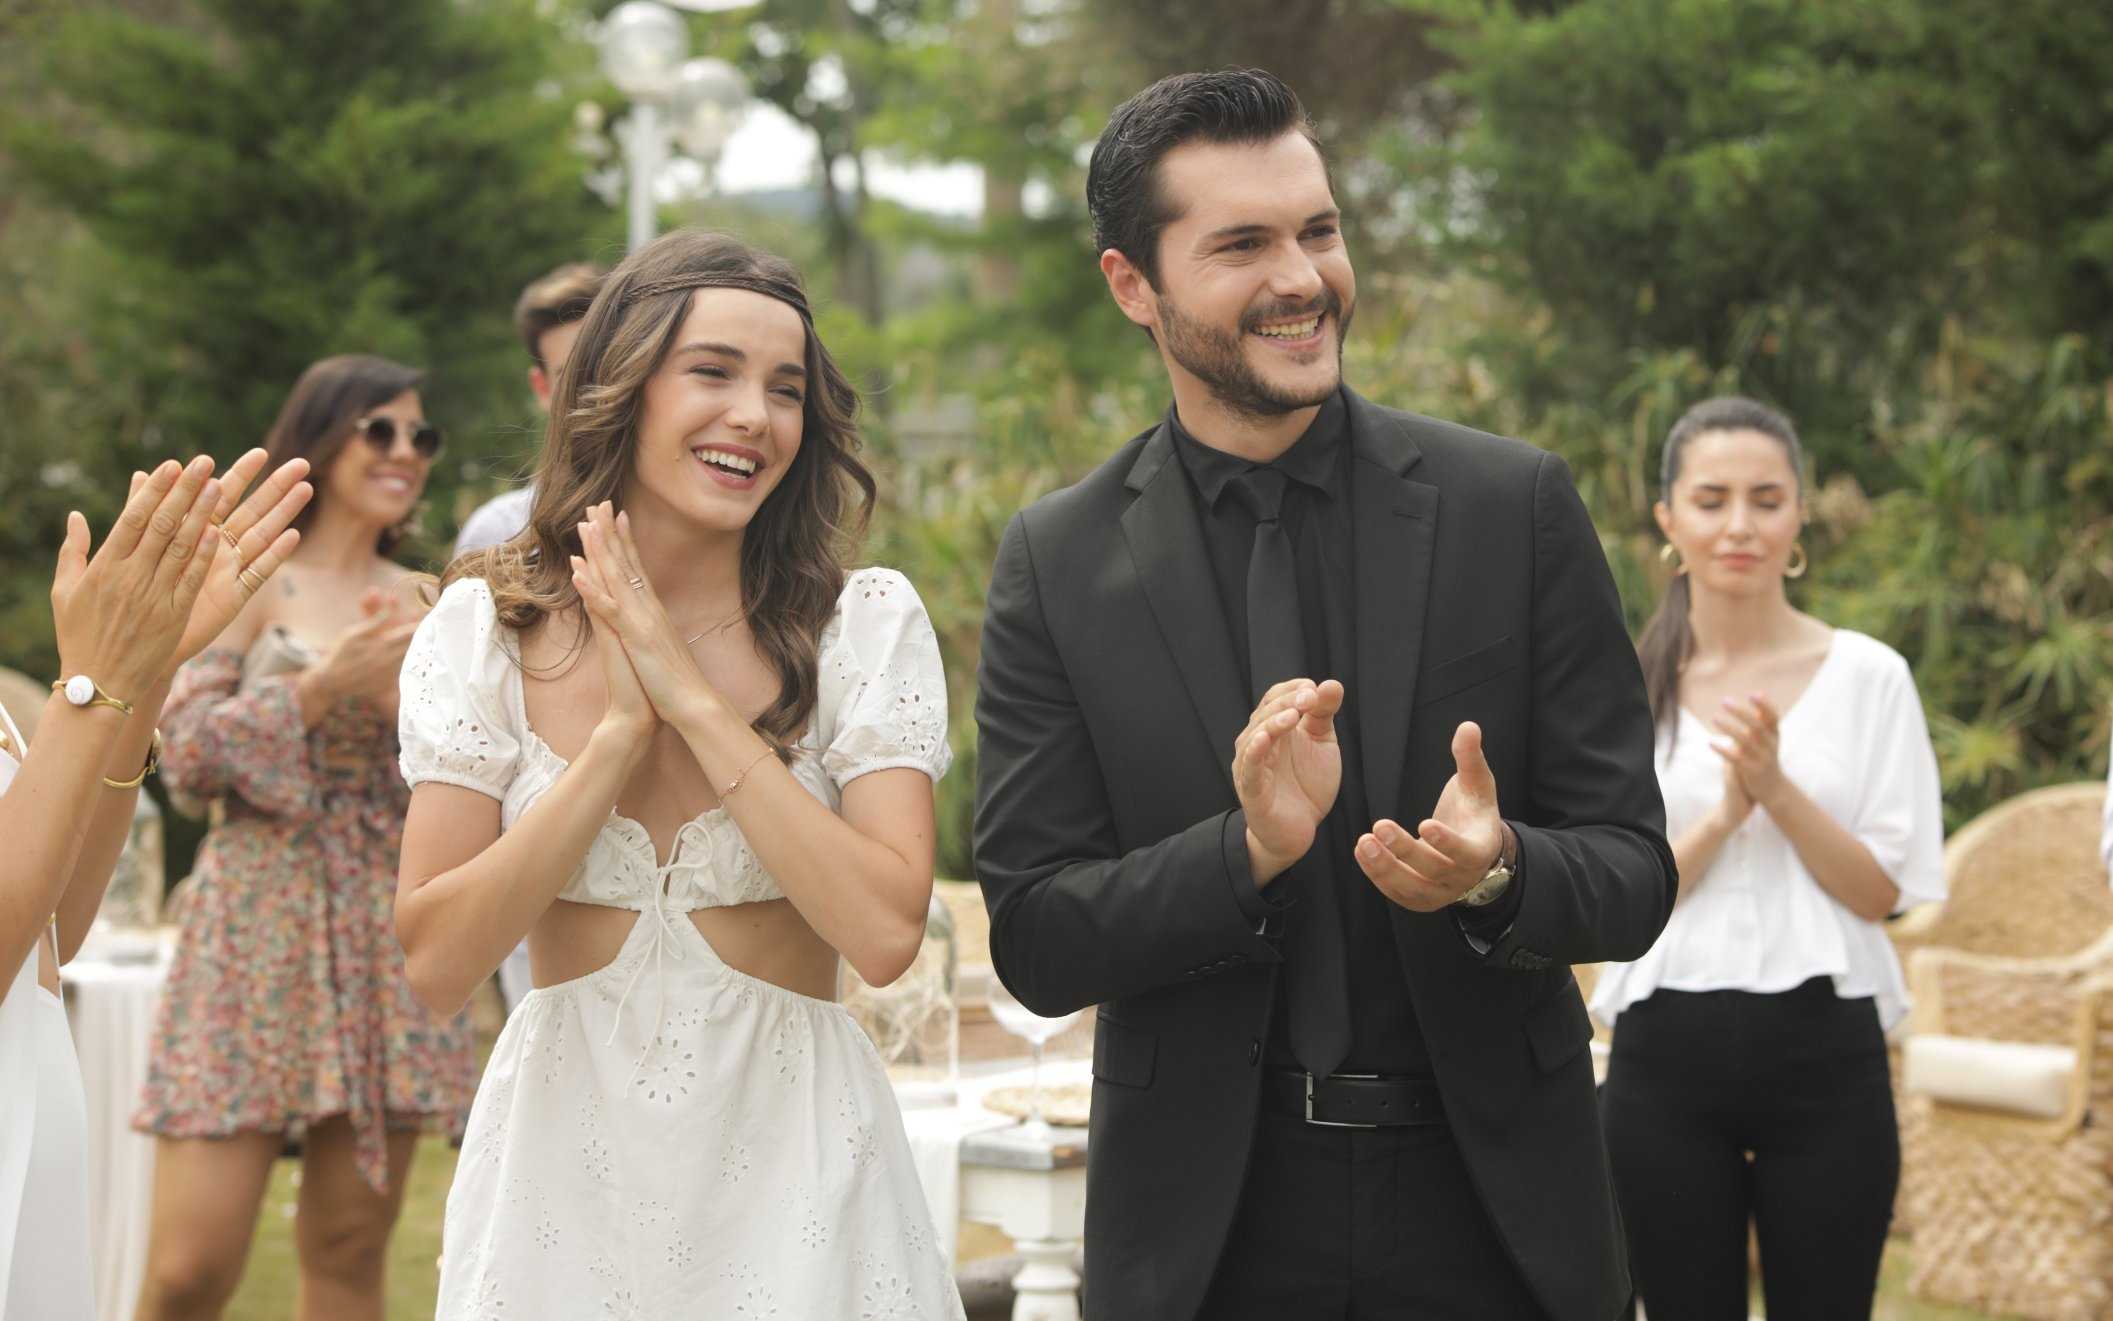 Черно-белая любовь турецкий сериал на русском языке смотреть онлайн все серии подряд бесплатно в hd